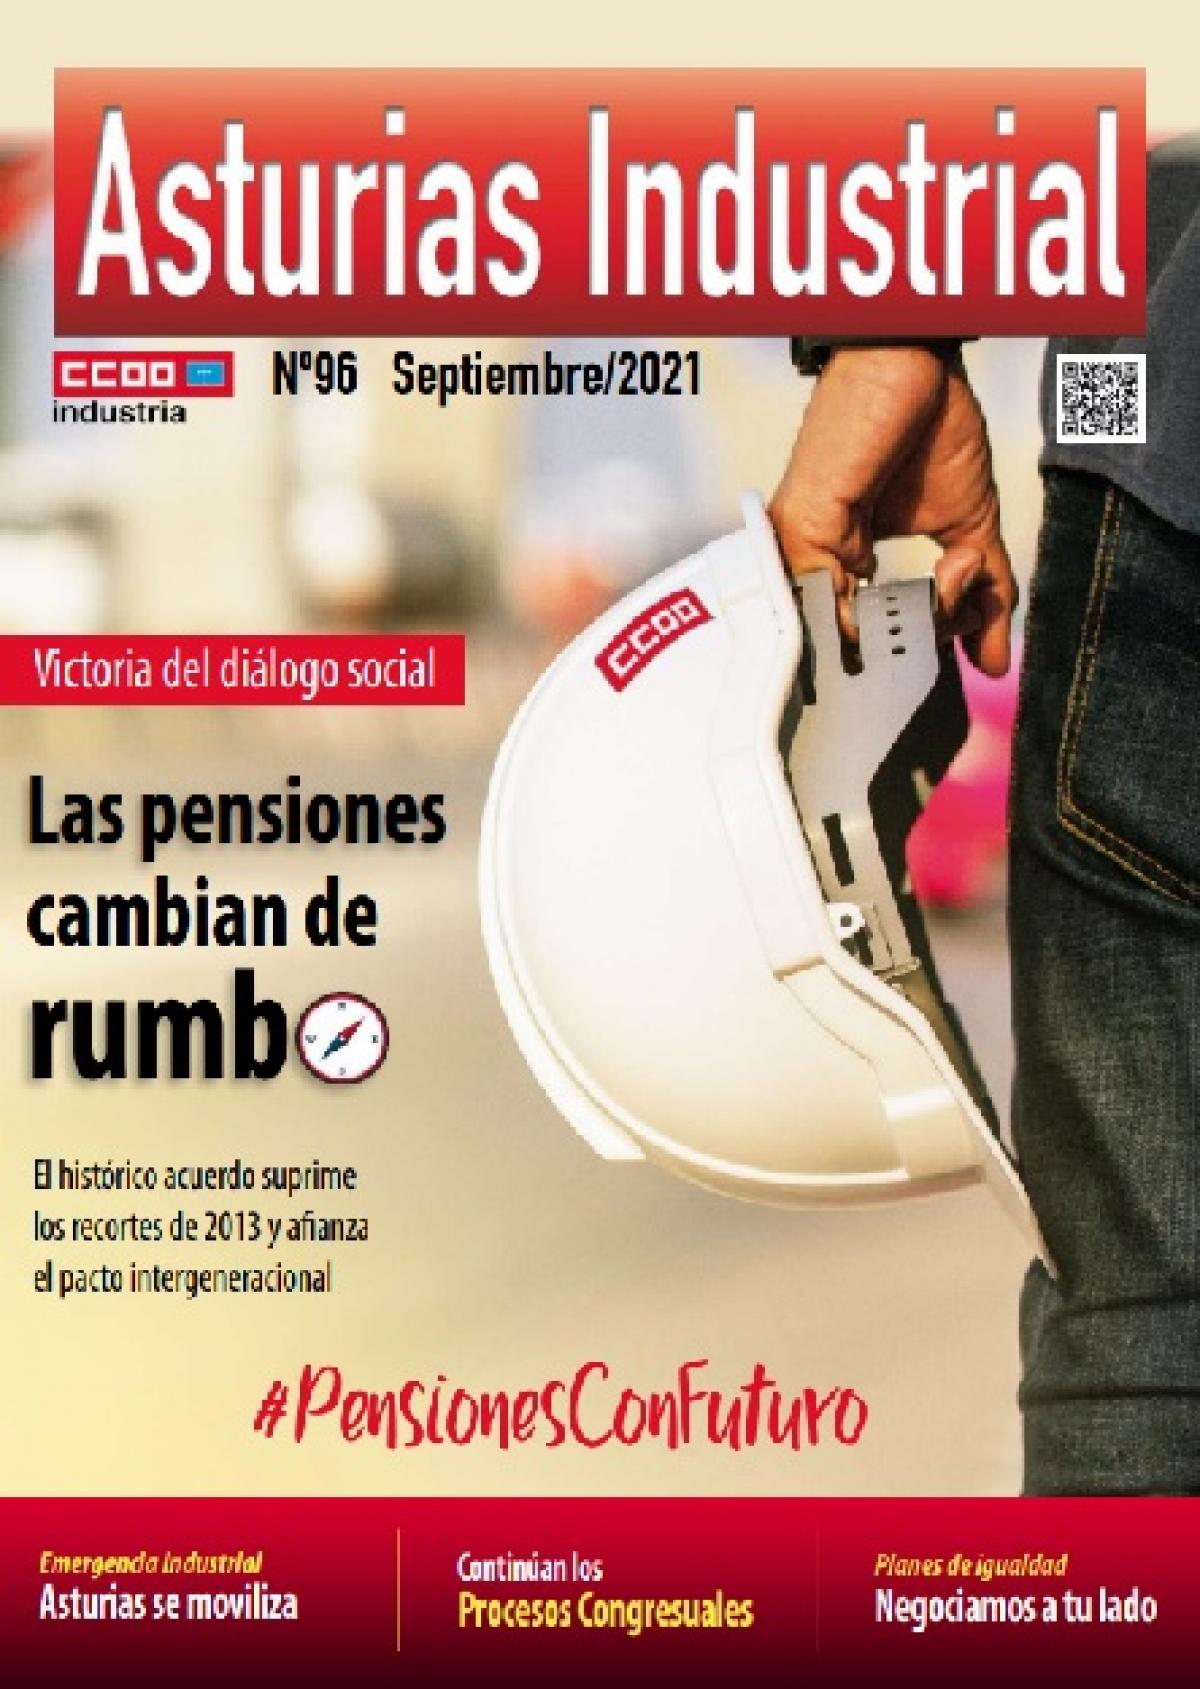 Asturias Industrial n 96